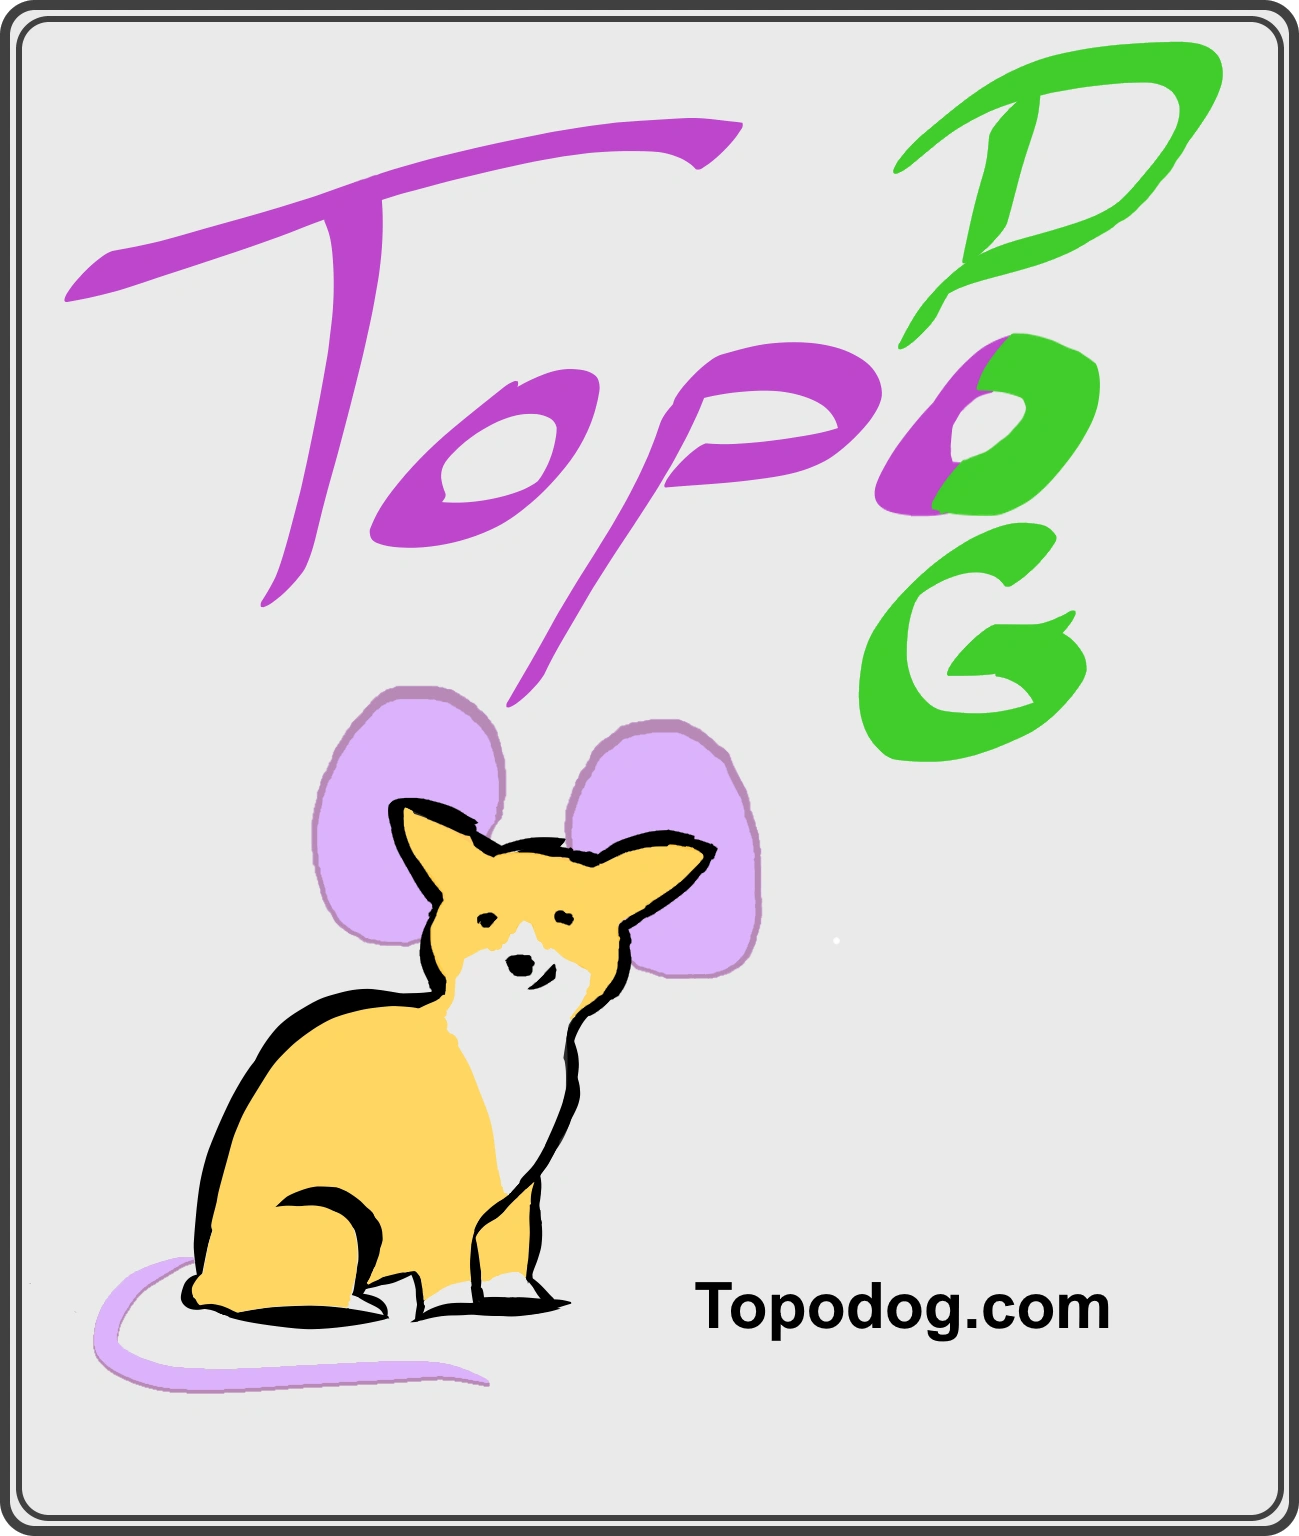 Topodog.com